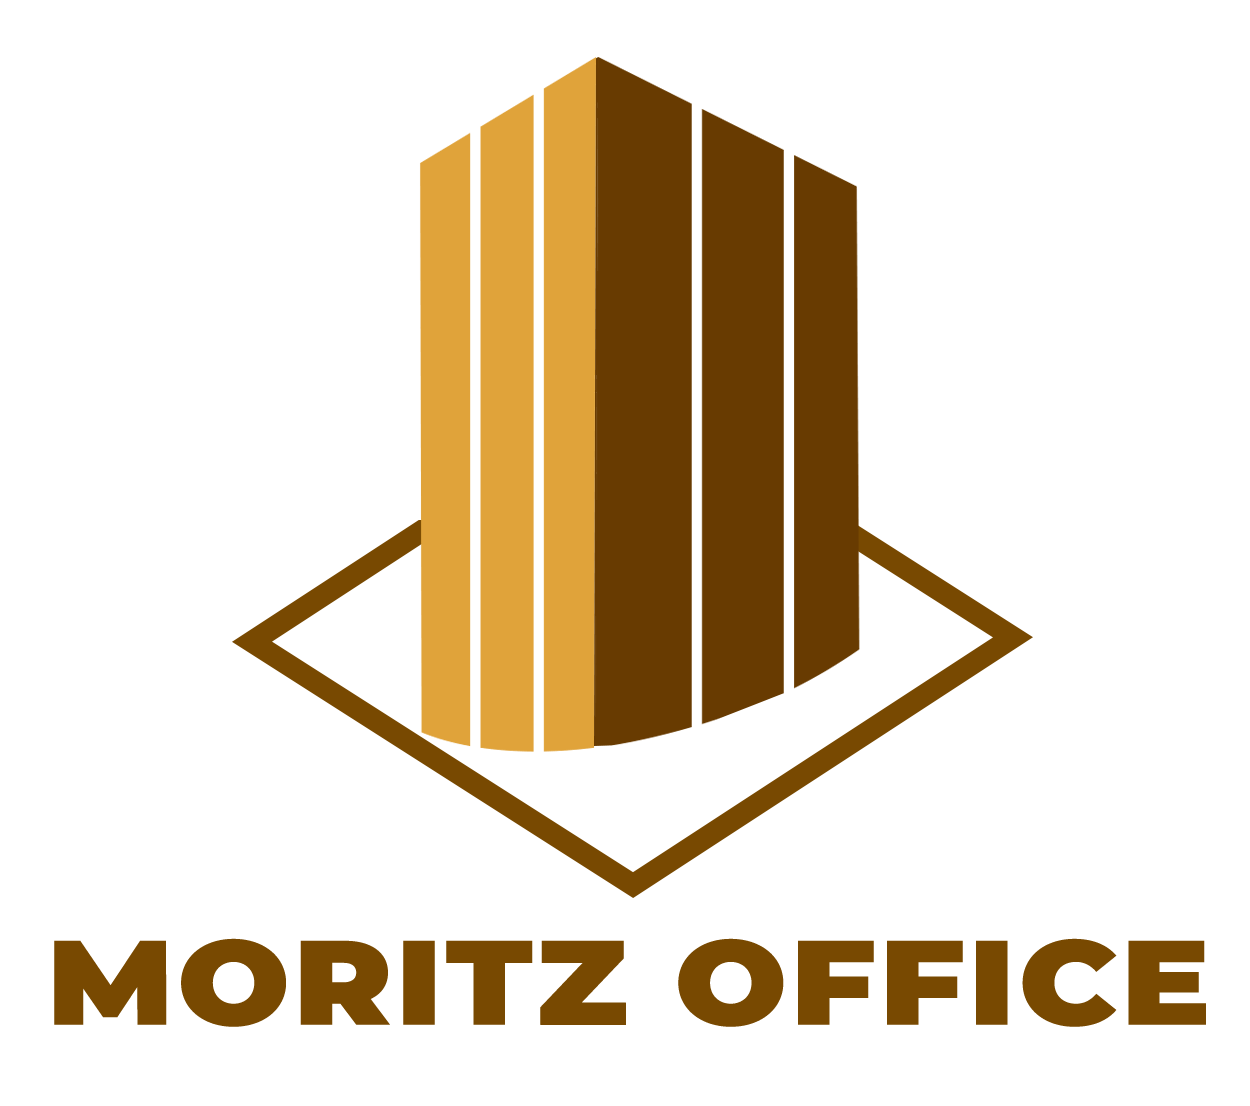 Văn phòng ảo tại Moritz Office – Đối tác tin cậy cho doanh nghiệp của bạn